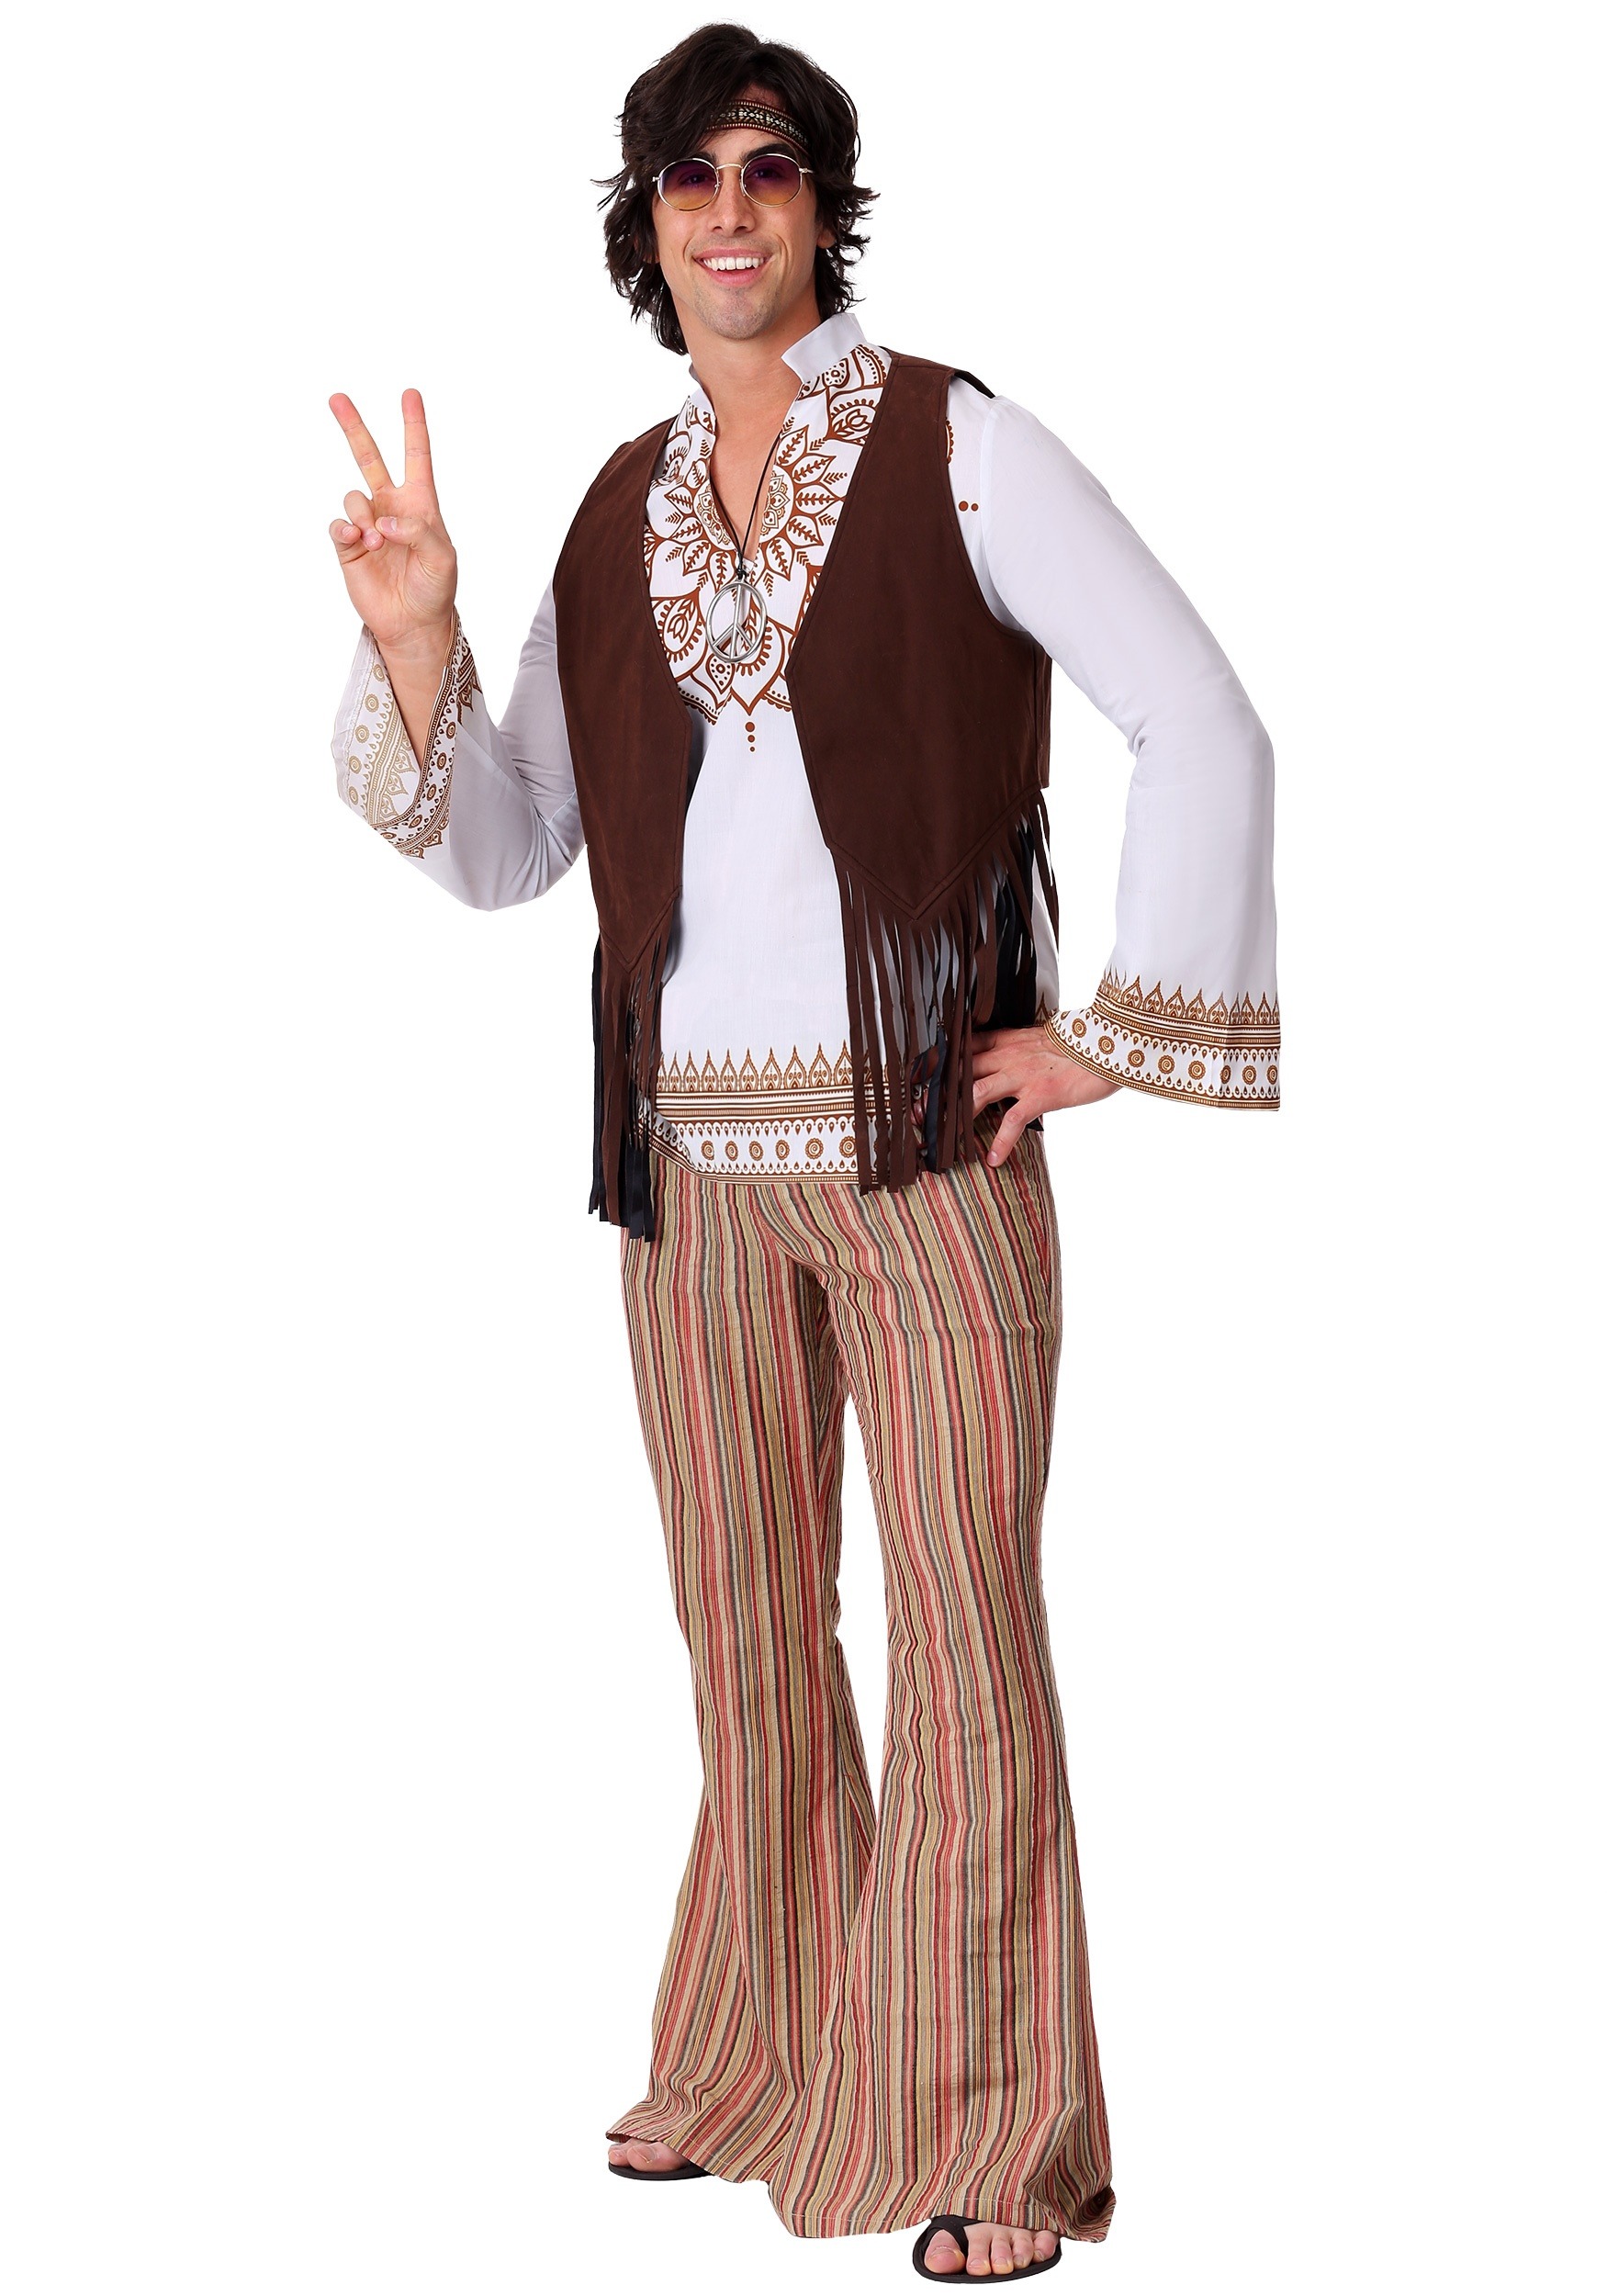 Woodstock Hippie Costume for Men